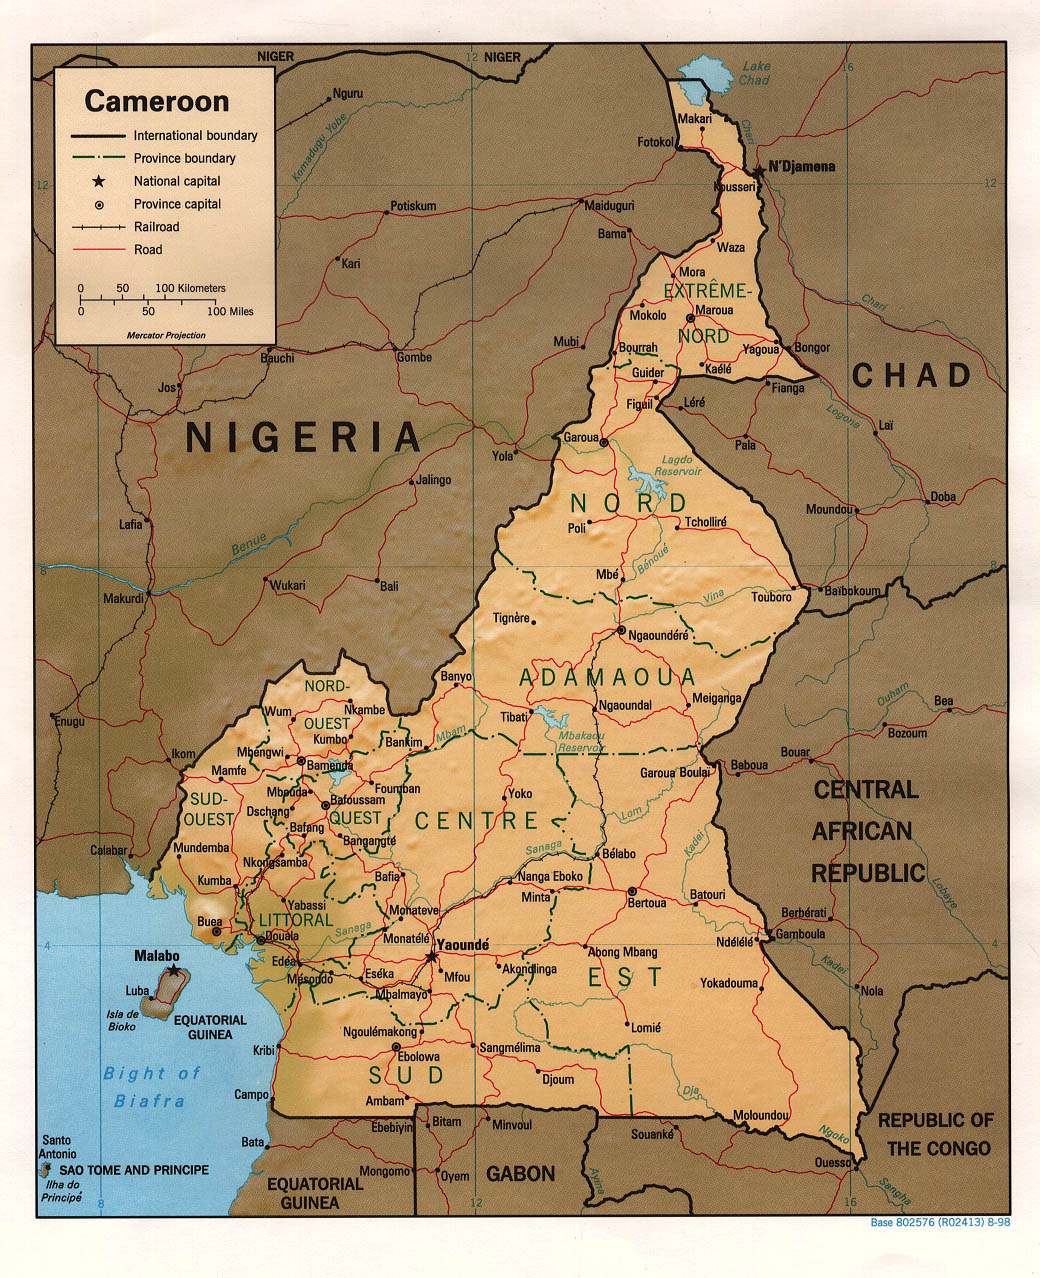 Kamerun liegt in Westafrika